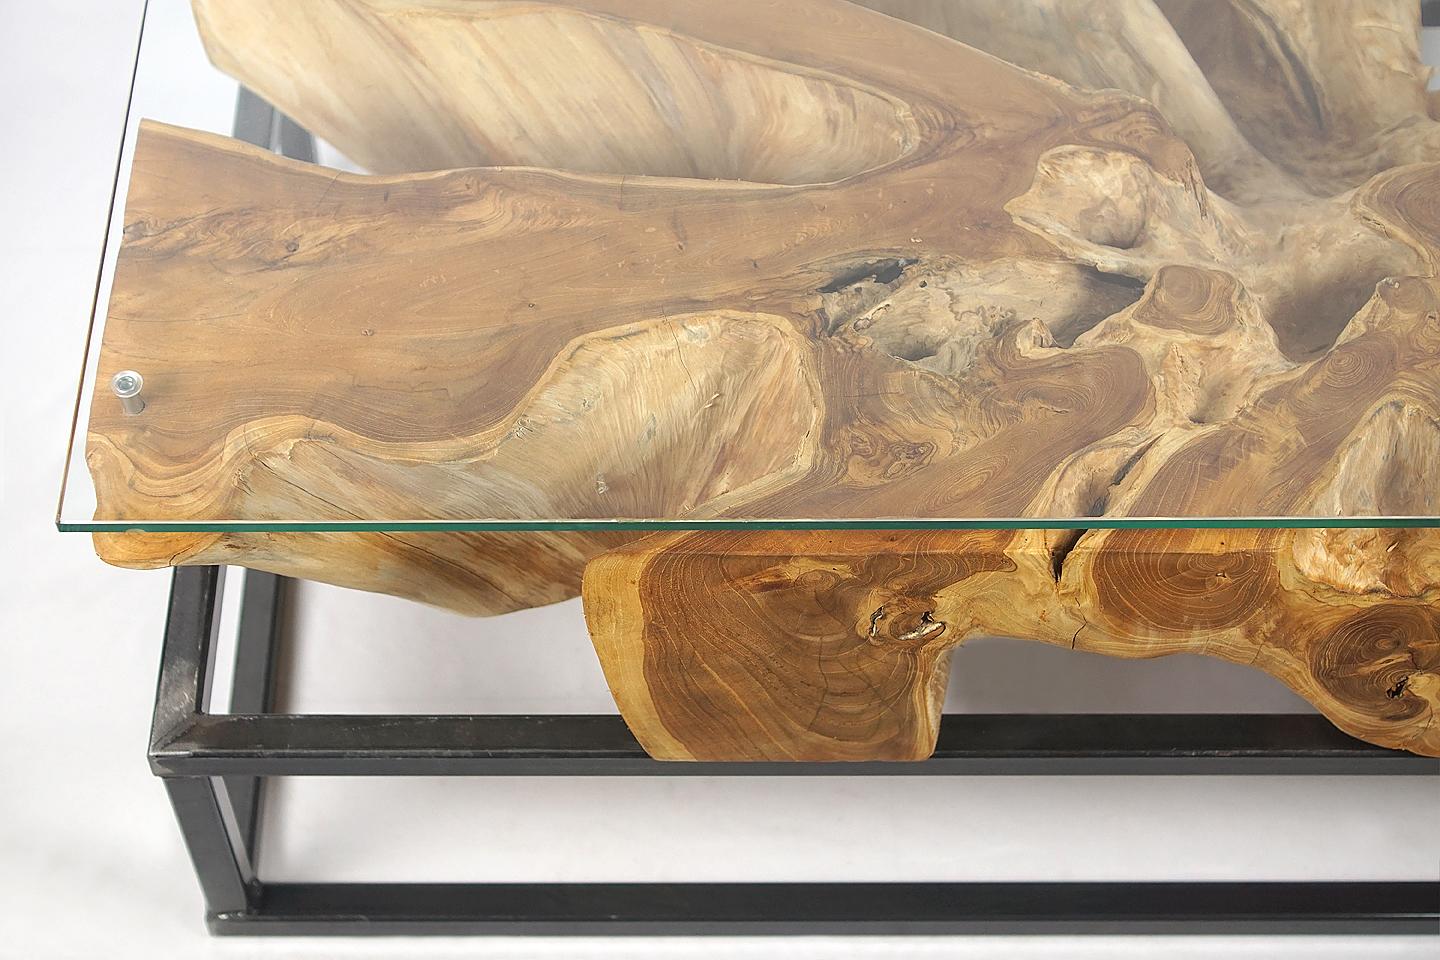 Table basse en bois de teck.

Magnifique table basse organique en racine de teck avec de superbes détails d'érosion, avec une plaque de verre trempé (10mm) sur le dessus. L'huilage de la racine lui confère une finition particulière et unique.

La